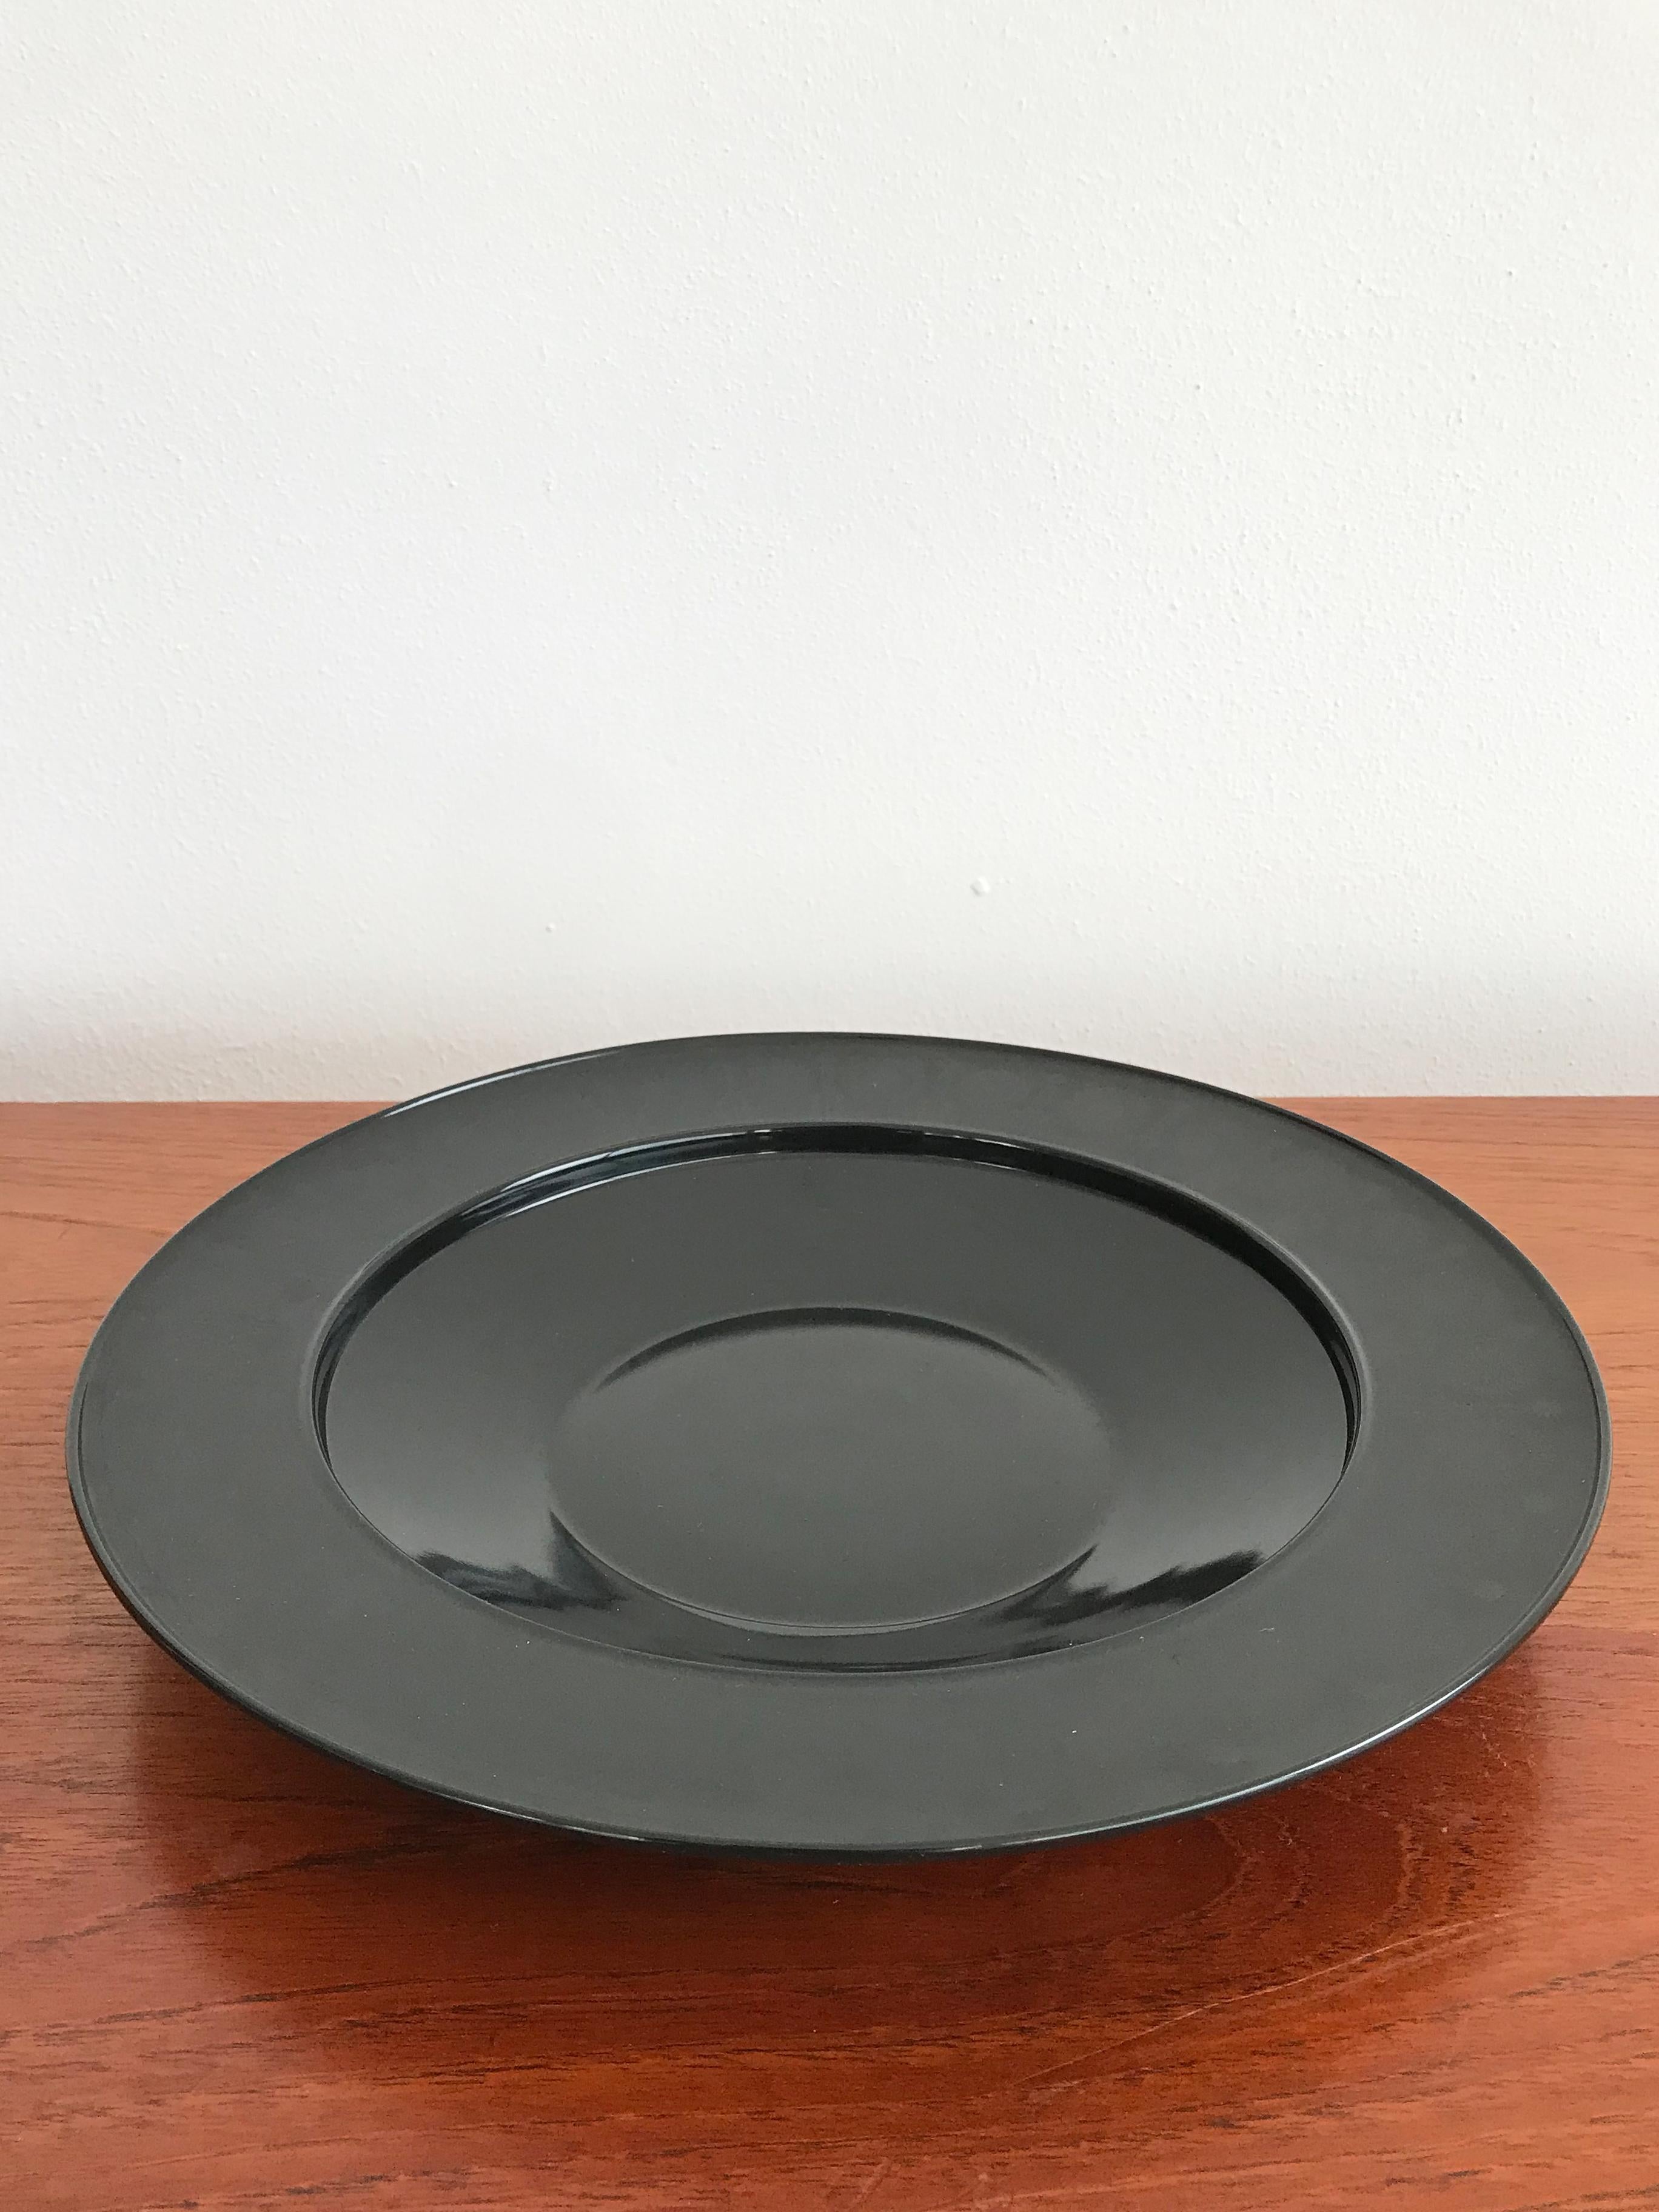 Tafelaufsatz, Obstschale, Teller aus schwarzem Porzellan, Vintage-Modernismus,
entworfen von Tapio Wirkkala für Rosenthal Studio Linie 